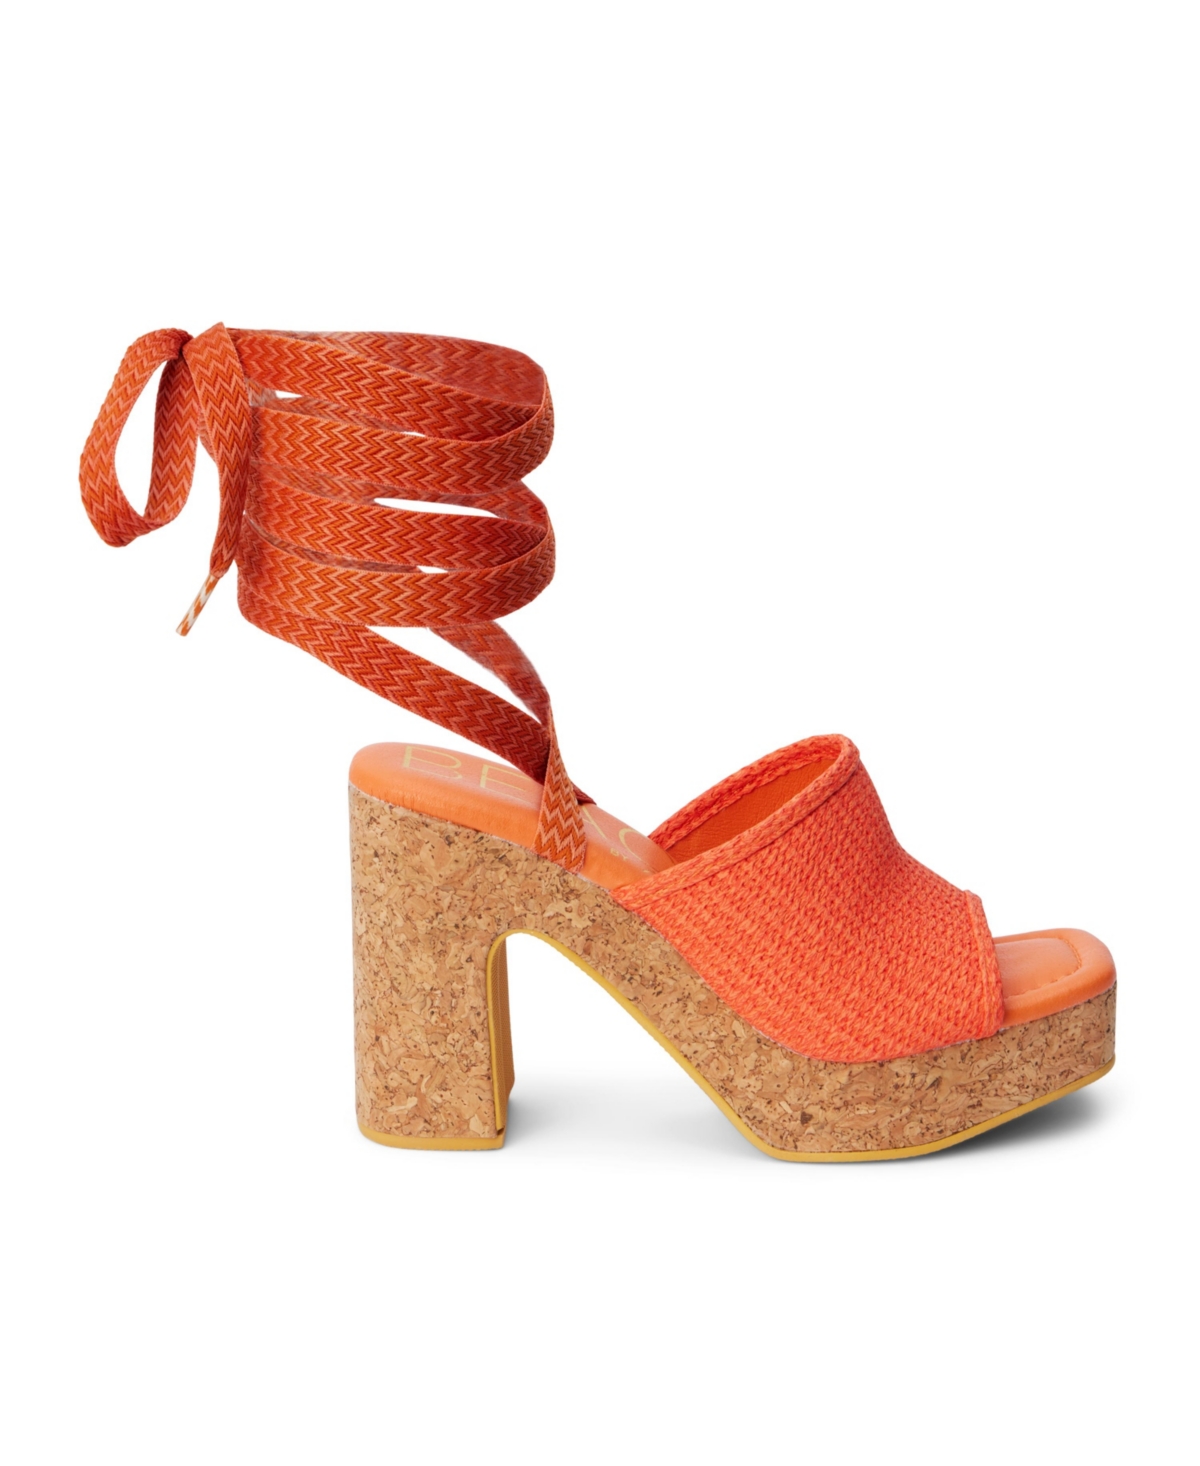 Magnolia Women's Sandals - Orange